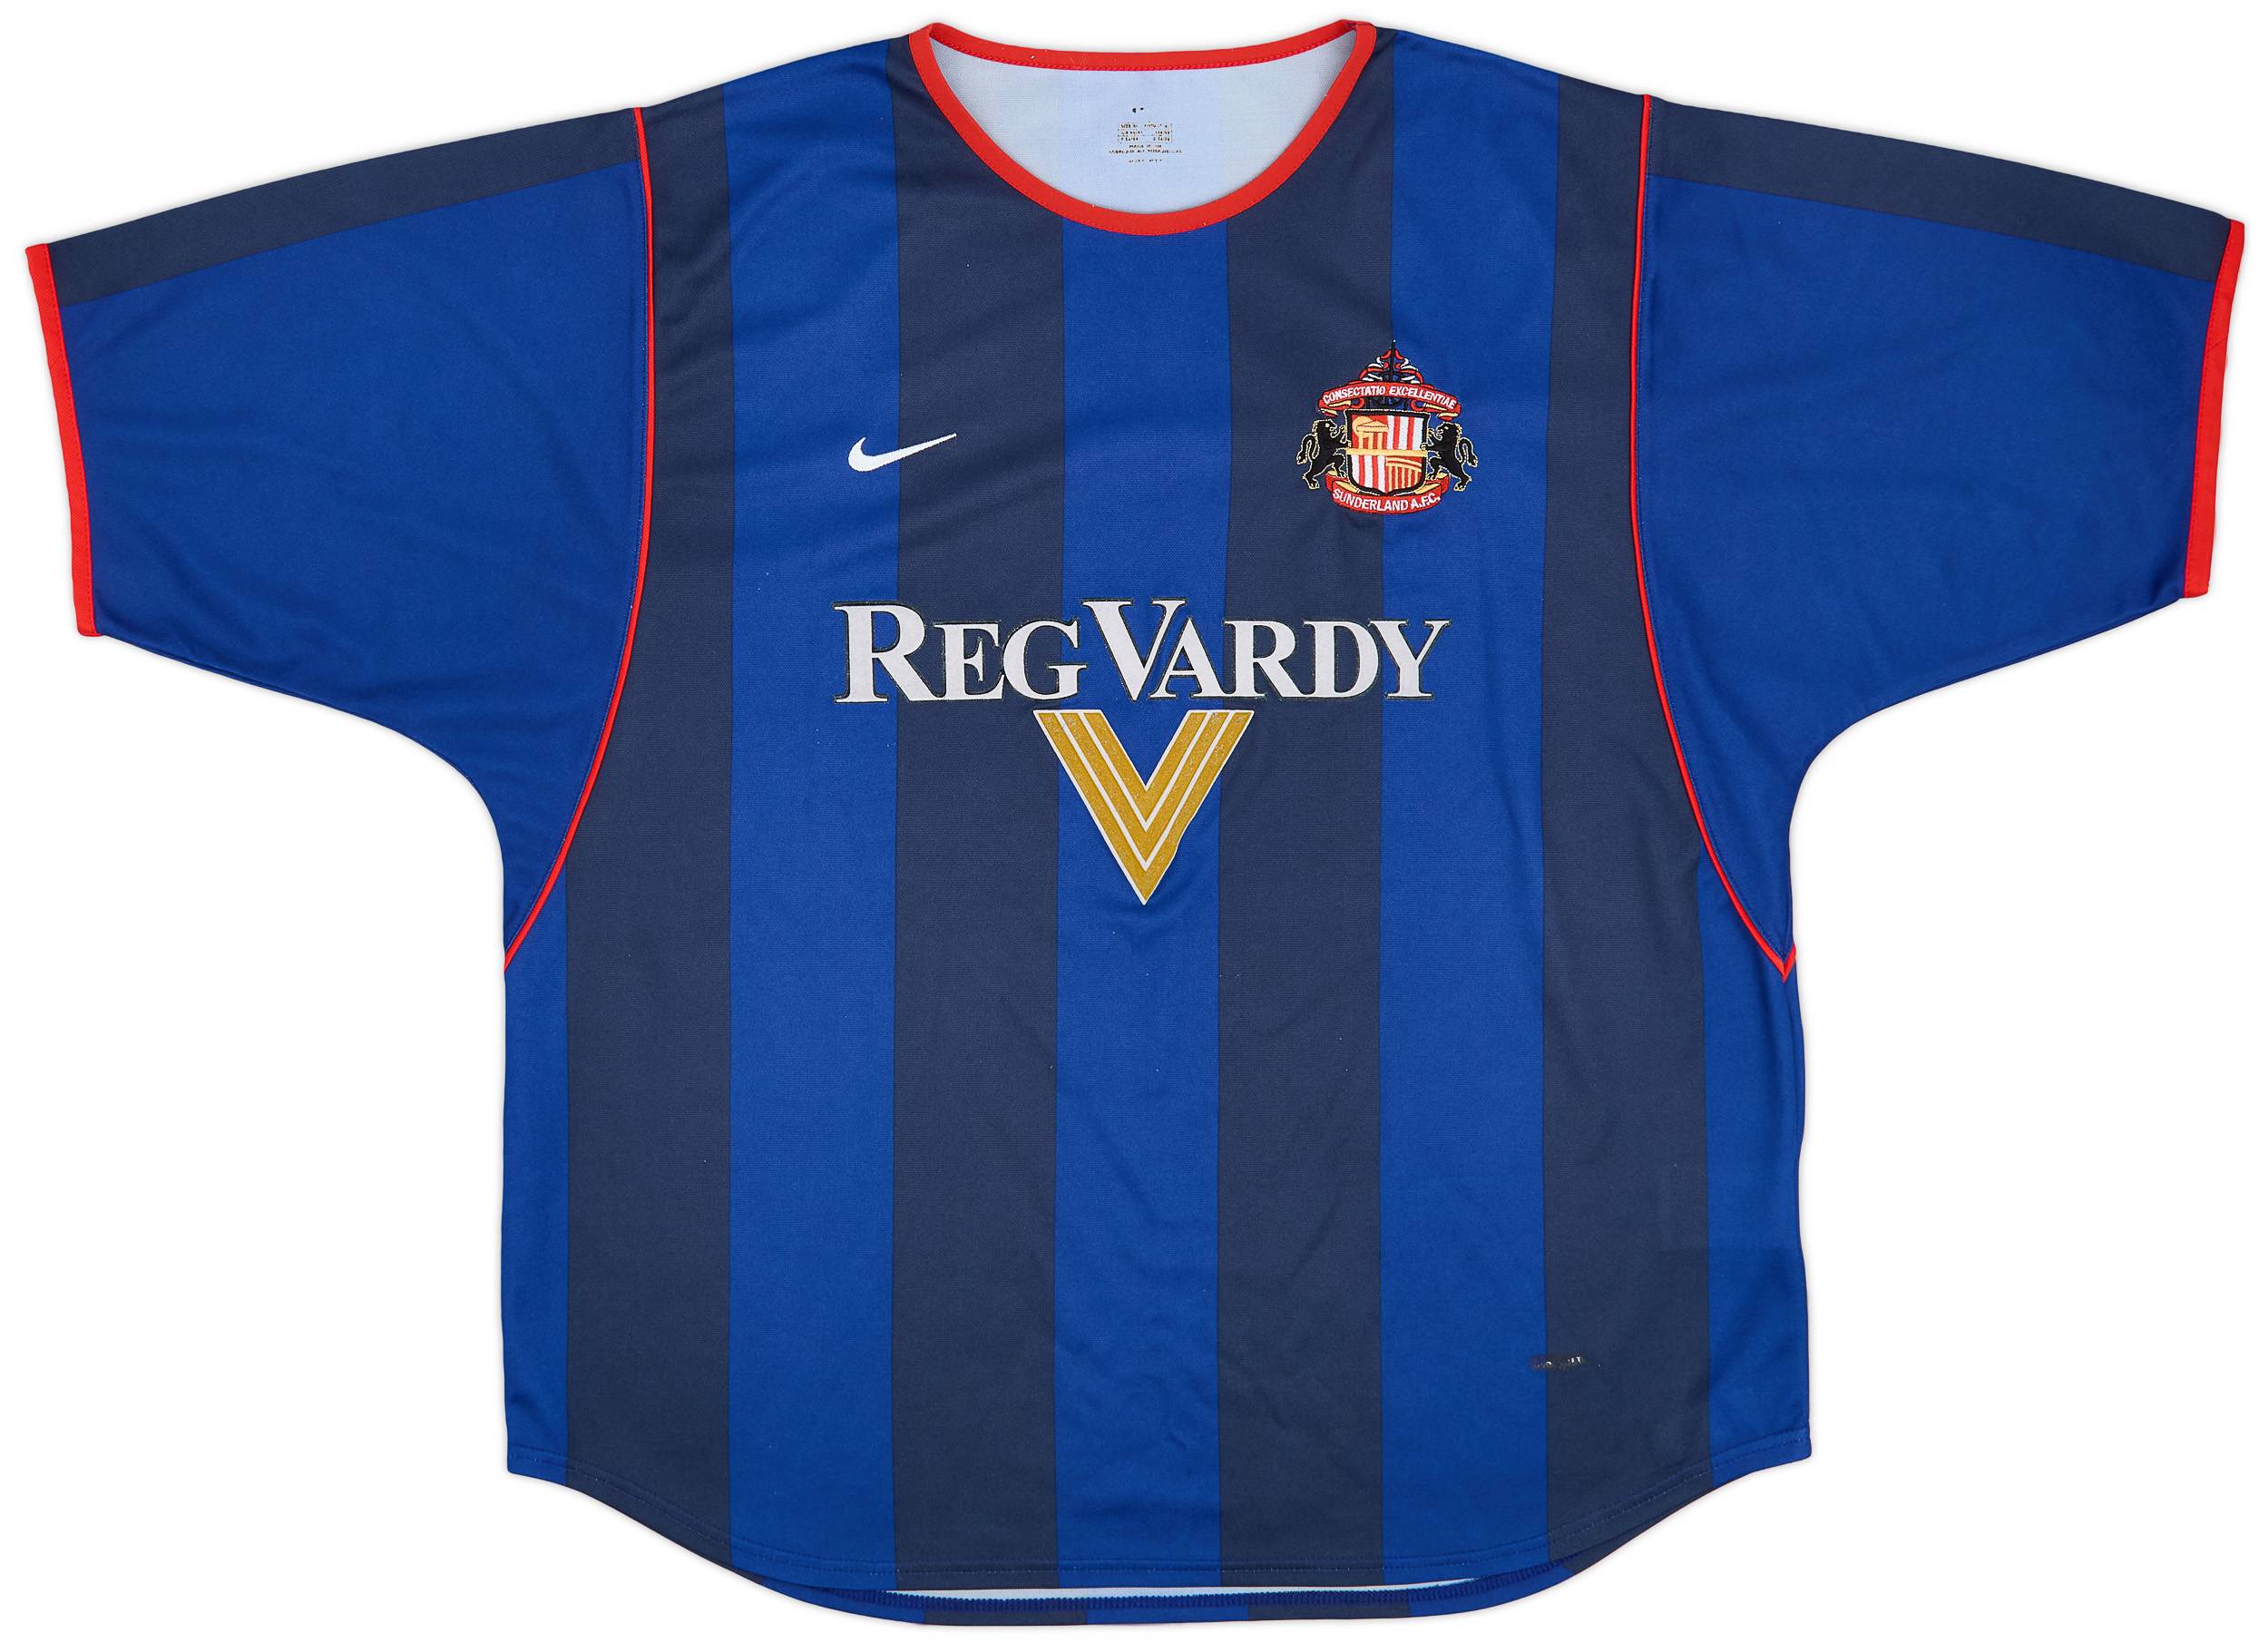 2001-02 Sunderland Away Shirt - 8/10 - (XL)